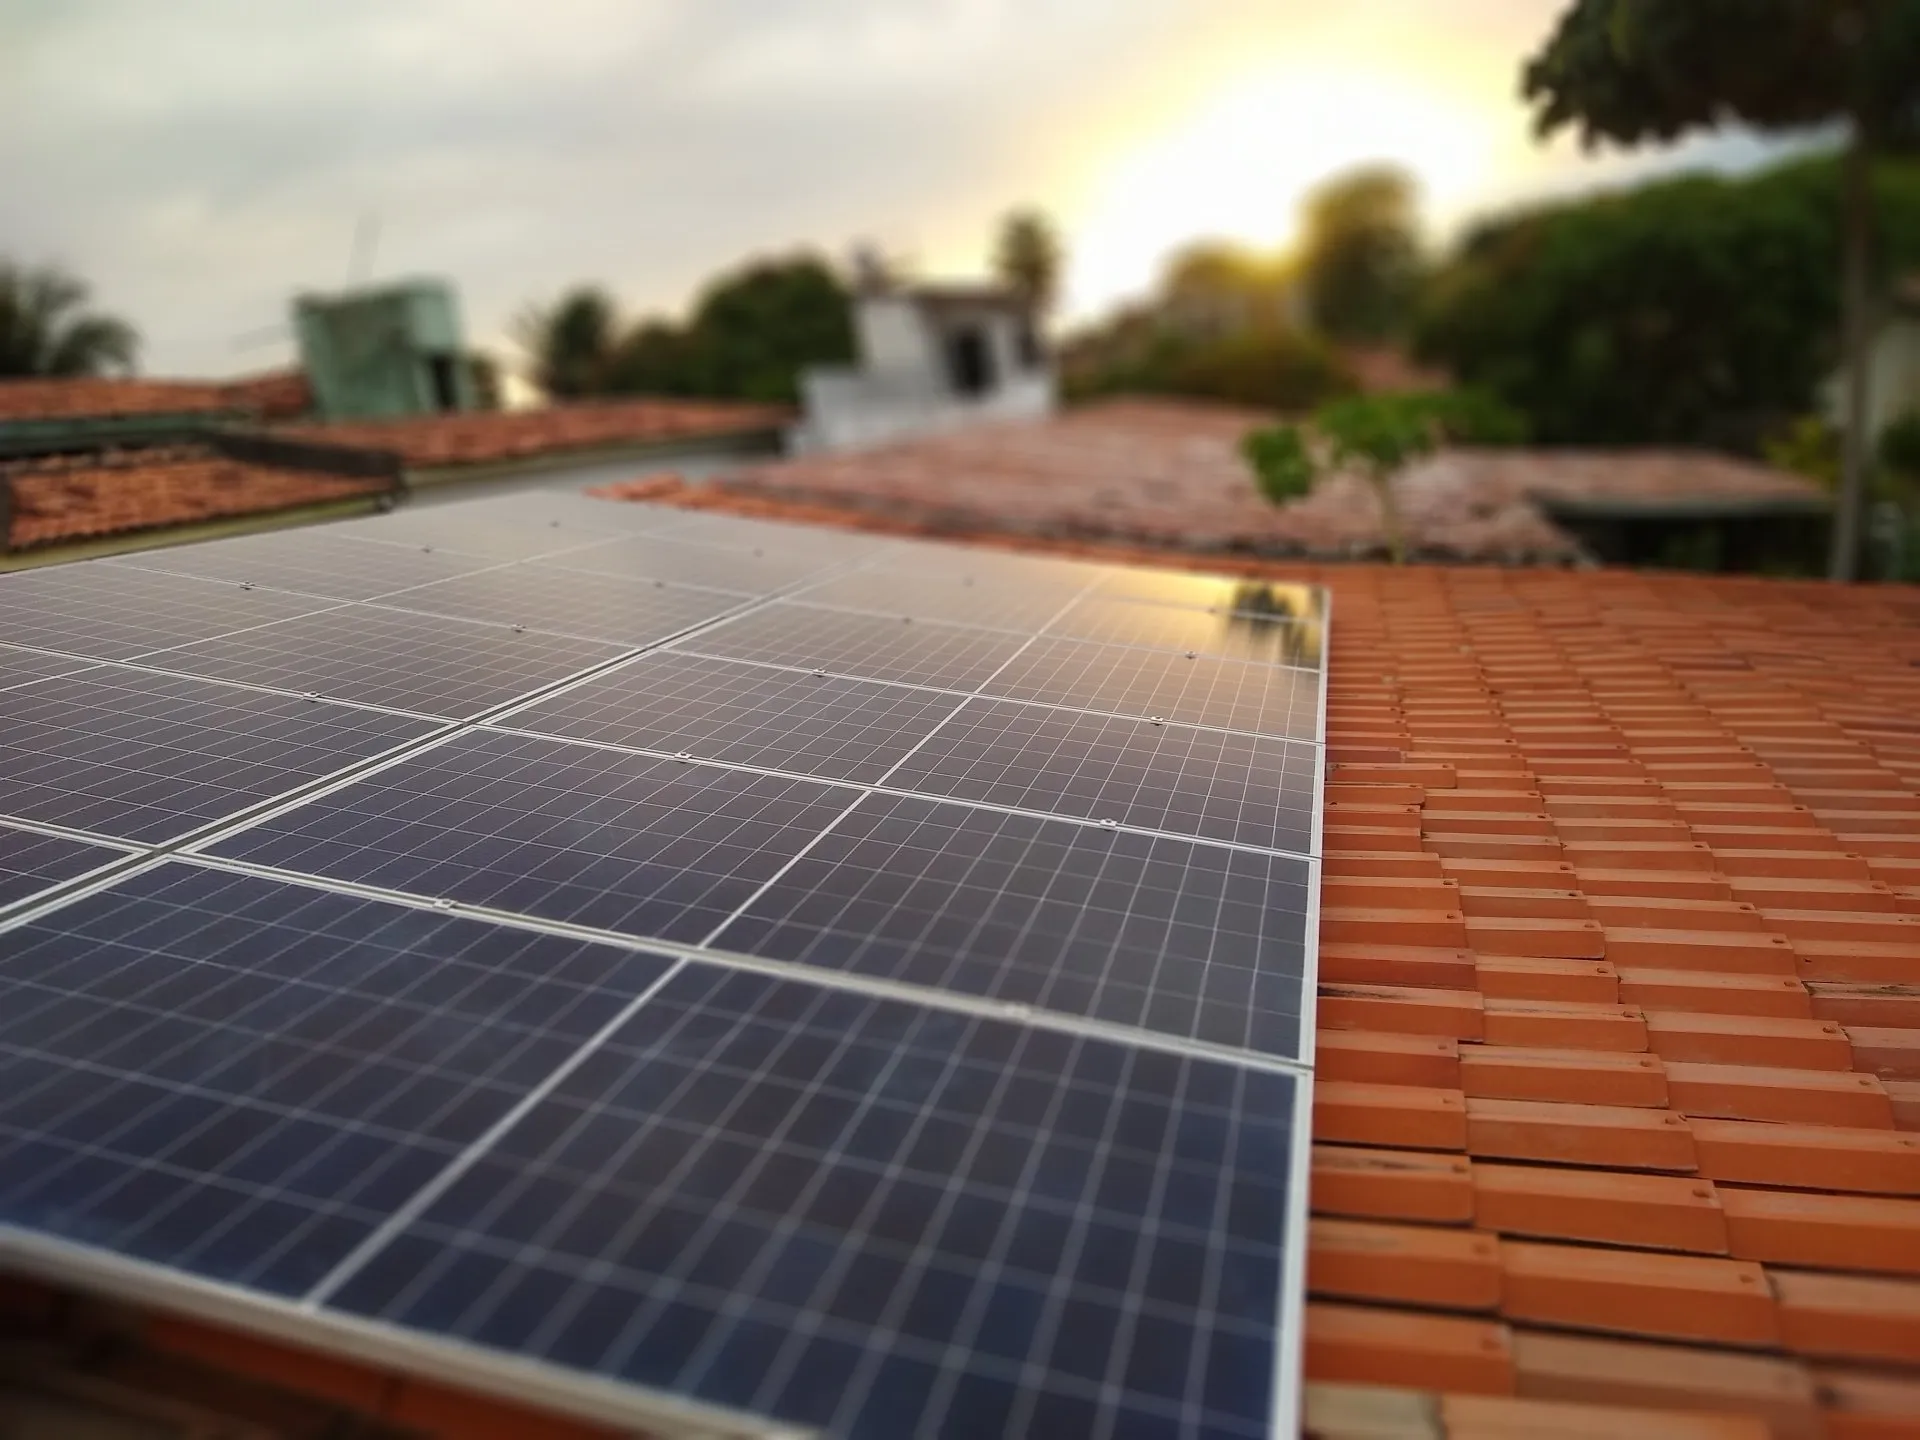 Sistema instalado no município de Paulista-PE. Composto por 12 módulos Solar Fotovoltaico de potência 410W e 03 Micro inversores. Com plataforma para monitoramento Online nível módulo a módulo.